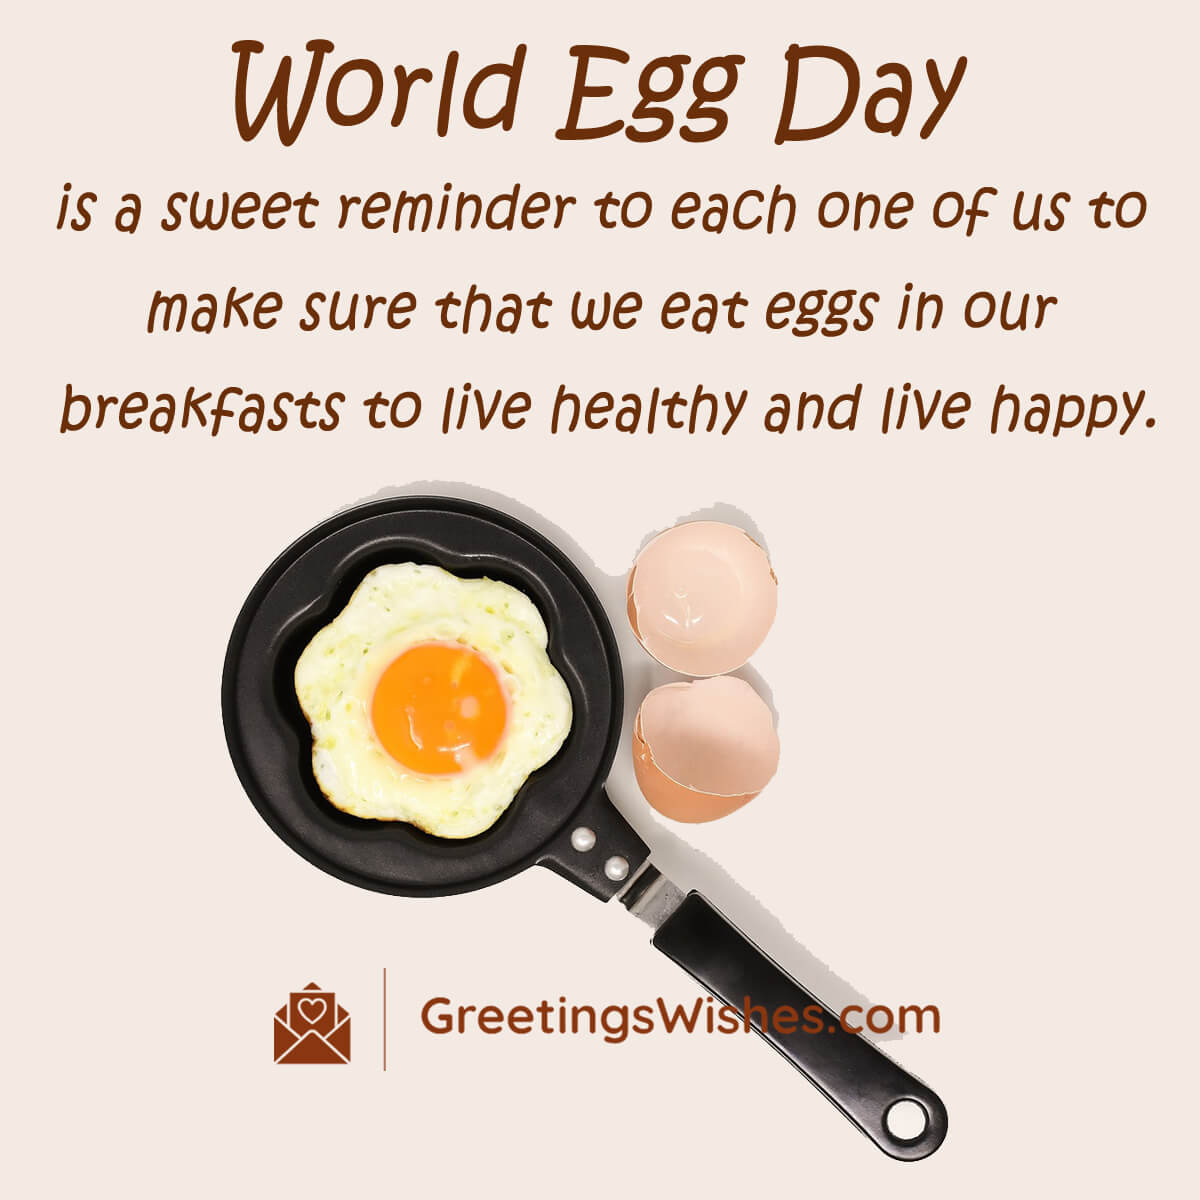 World Egg Day Images